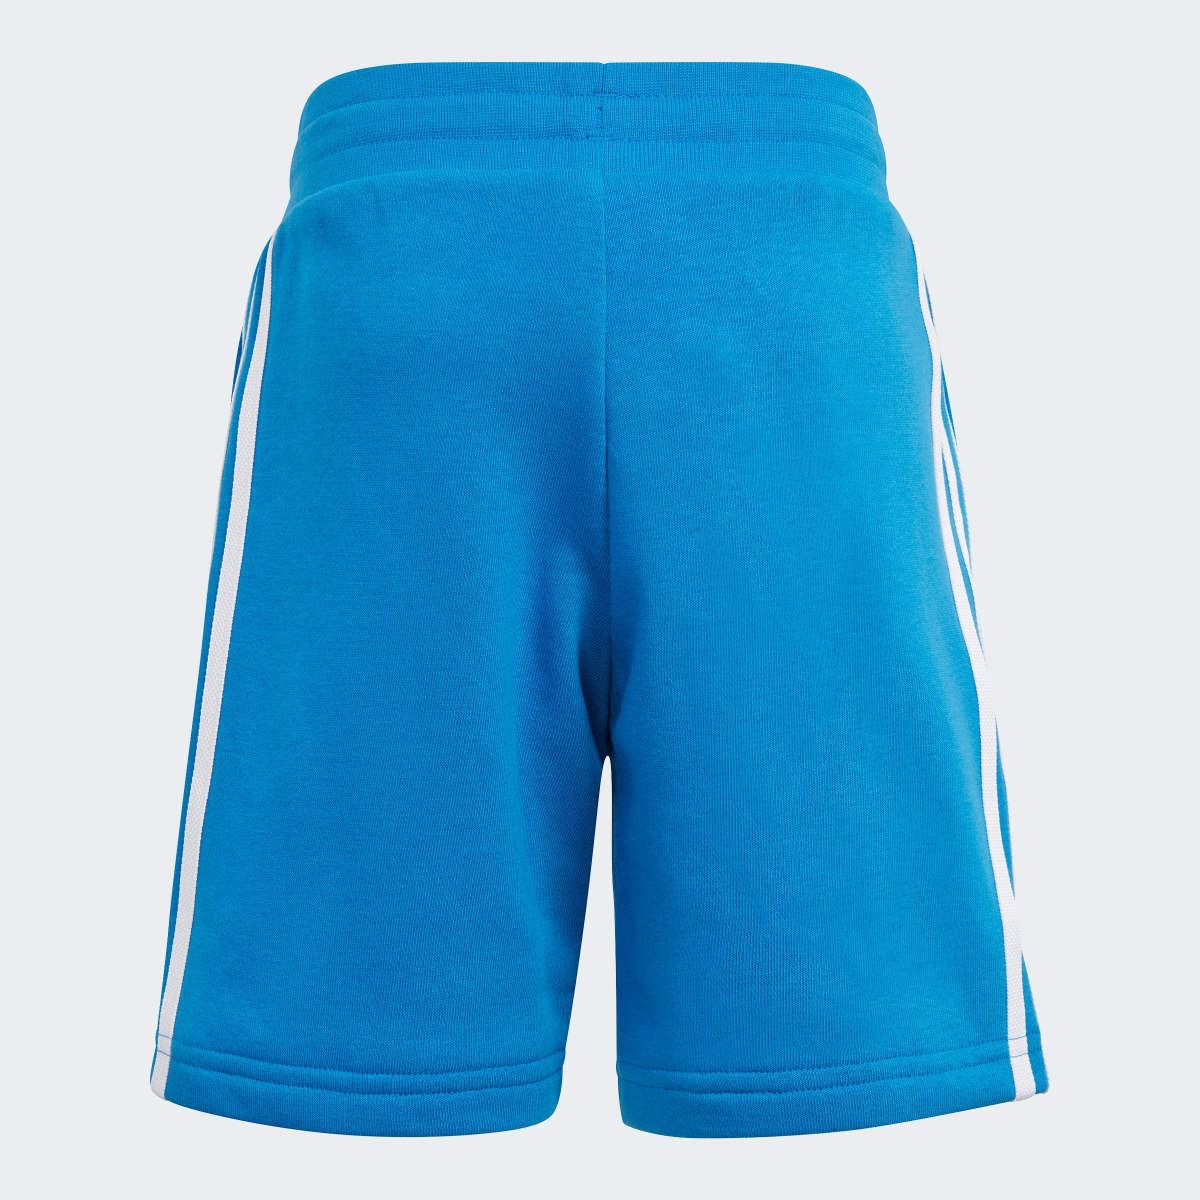 Adidas Adicolor Shorts and Tee Set. 6